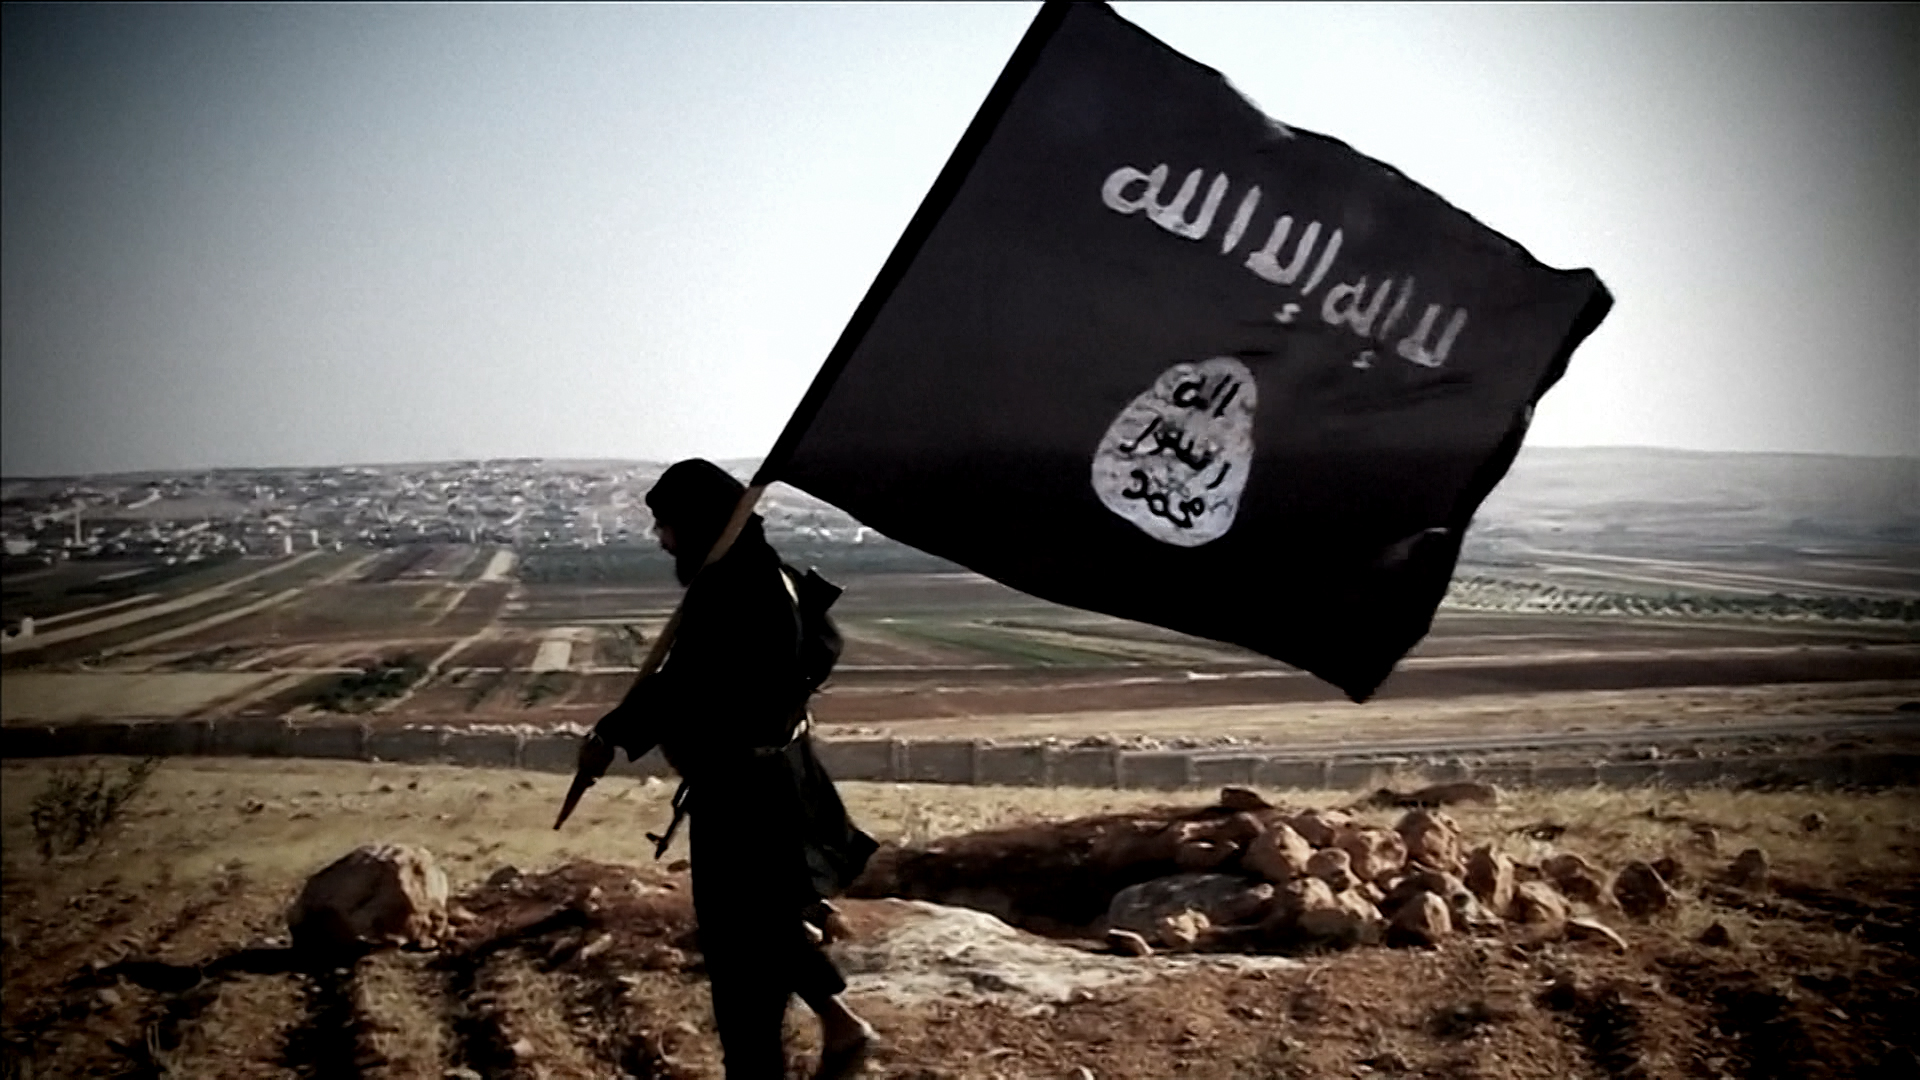 Игил по английски. Флаг МТО ИГИЛ. Флаг Исламского государства.